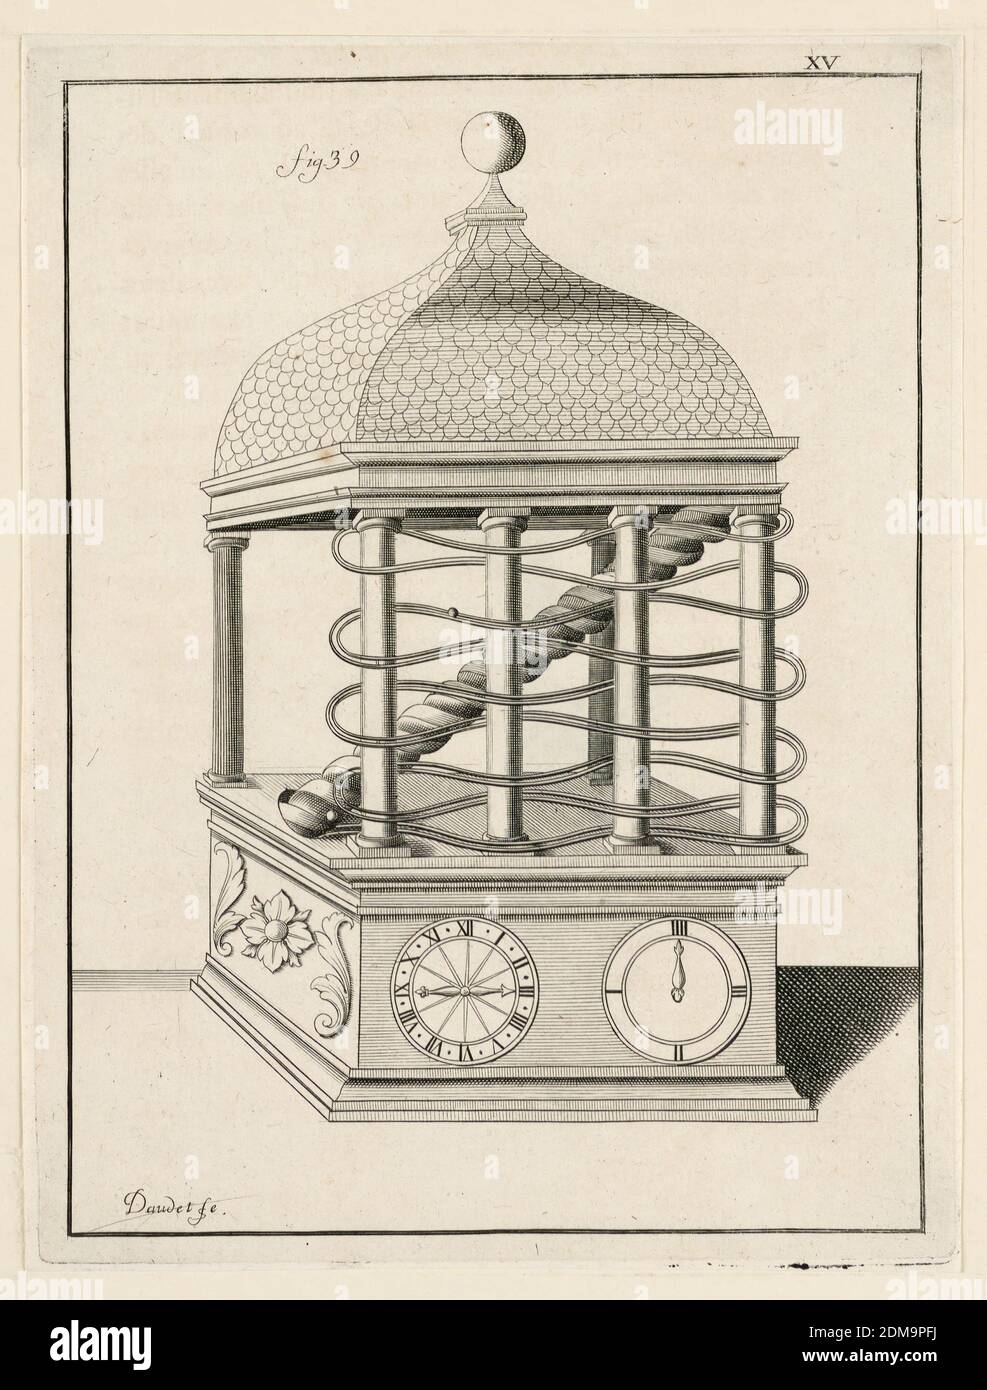 Design For a Clock, pl. XV from 'Recueil d'Ouvrages Curieux de Mathematique et de Mecanique, ou Description du Cabinet', Gaspard Grollier de Seviere II, French, 1677 - 1745, Engraving on paper, France, 1719, Print Stock Photo